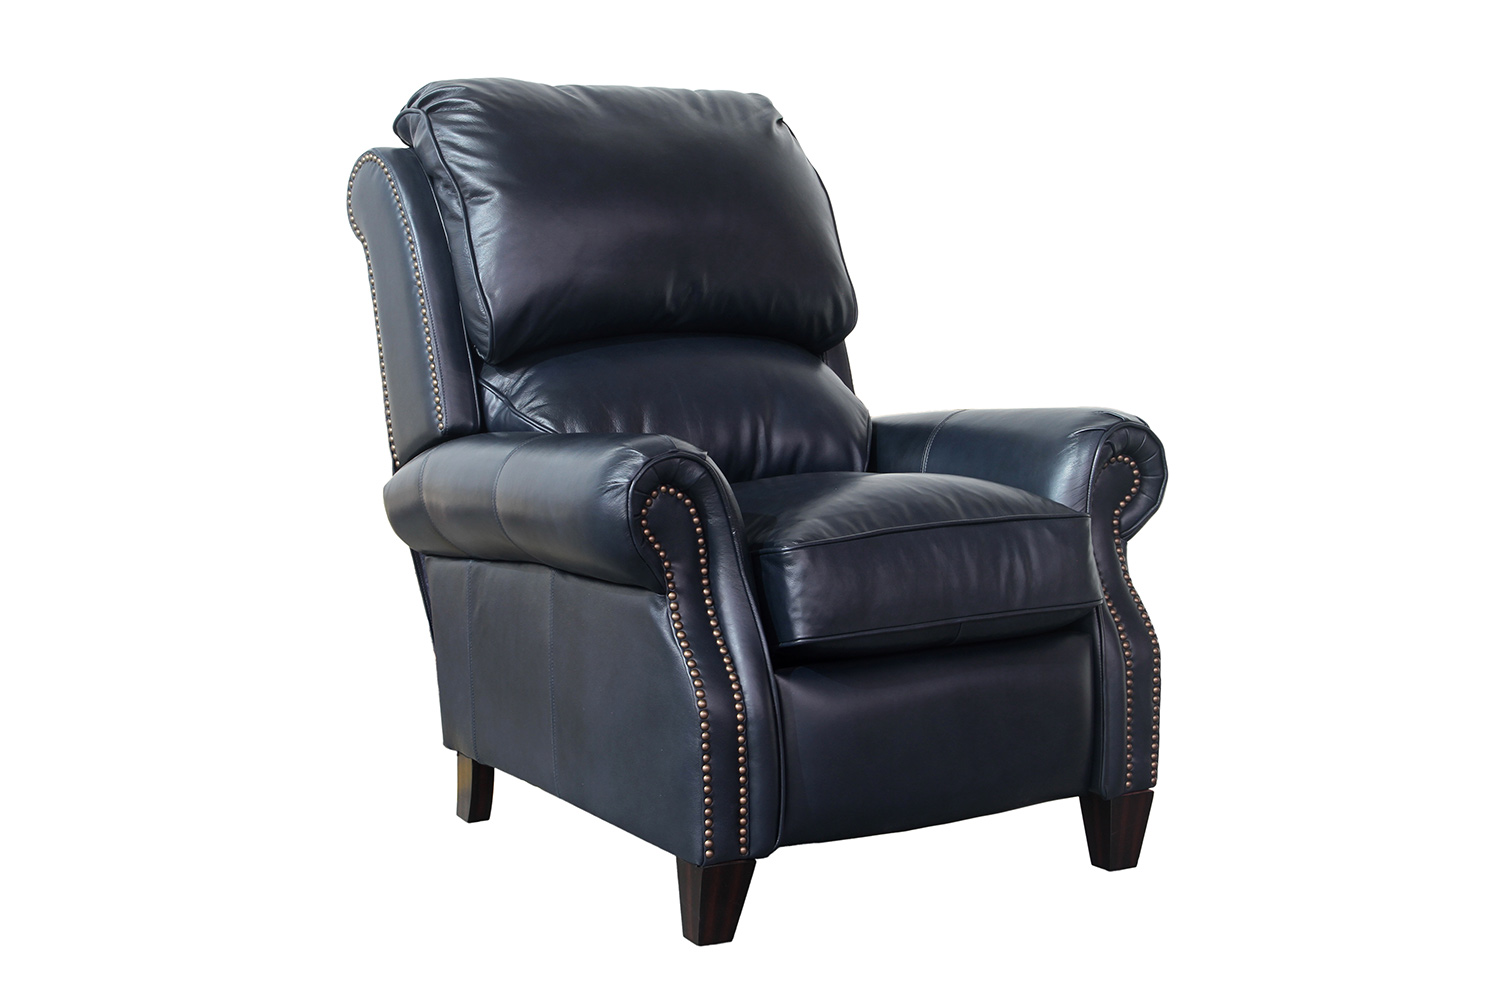 Barcalounger Churchill Recliner Chair - Shoreham Blue/All Leather